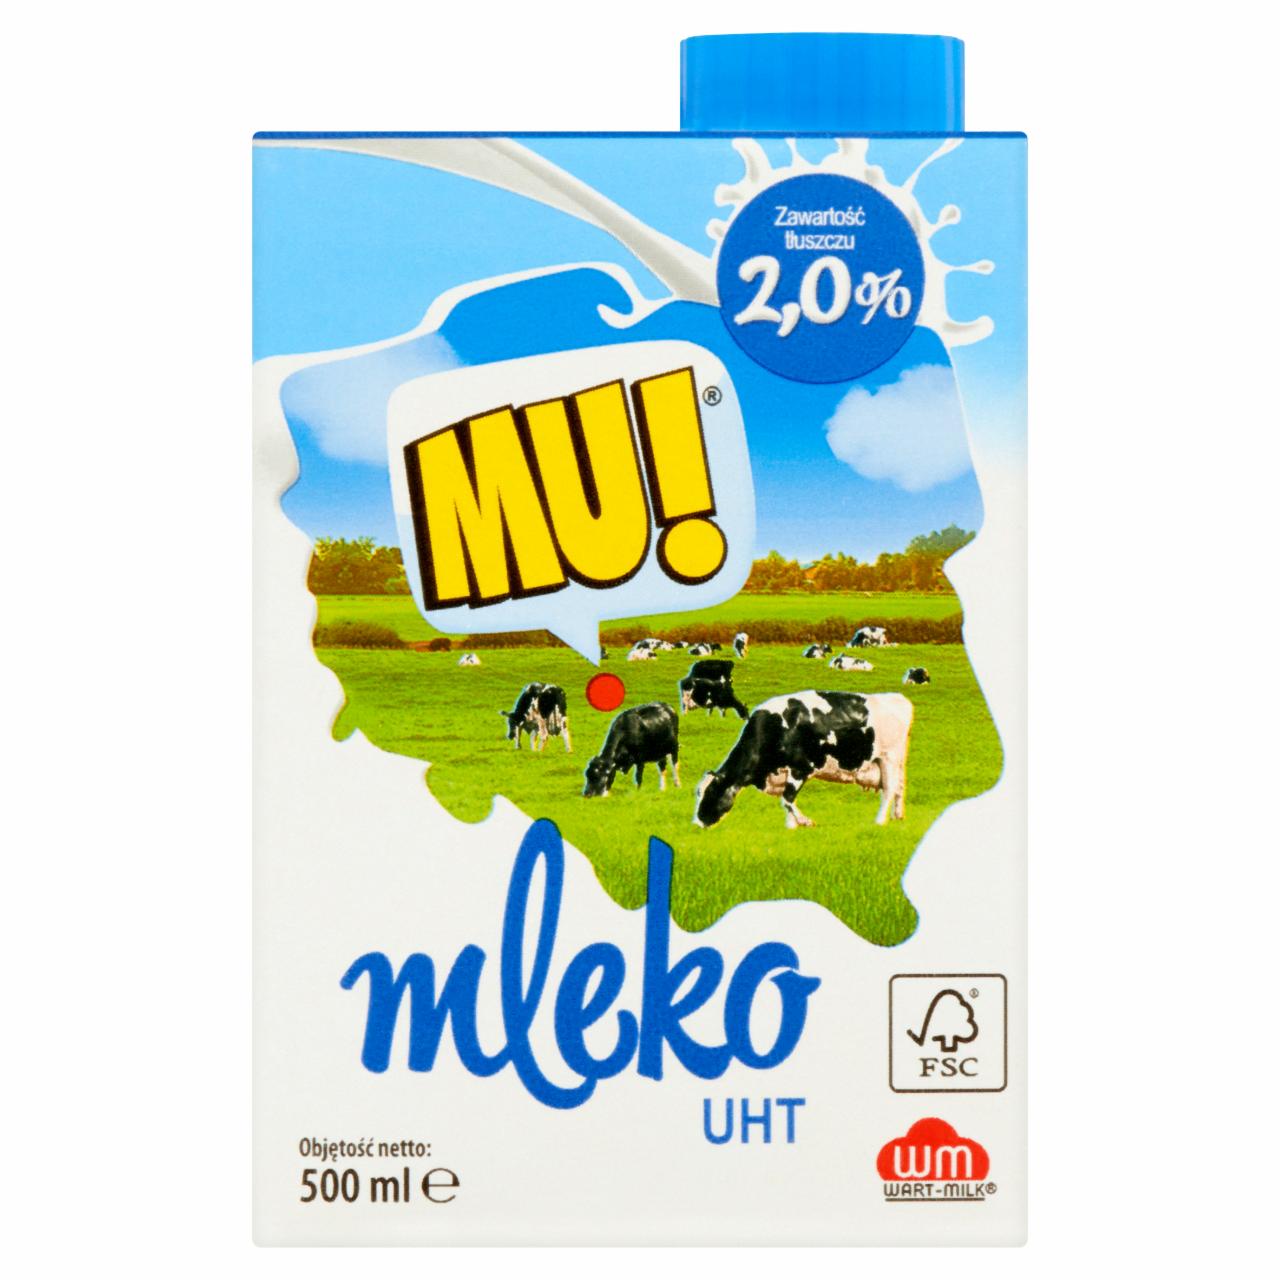 Zdjęcia - Mu! Mleko UHT 2,0% 500 ml